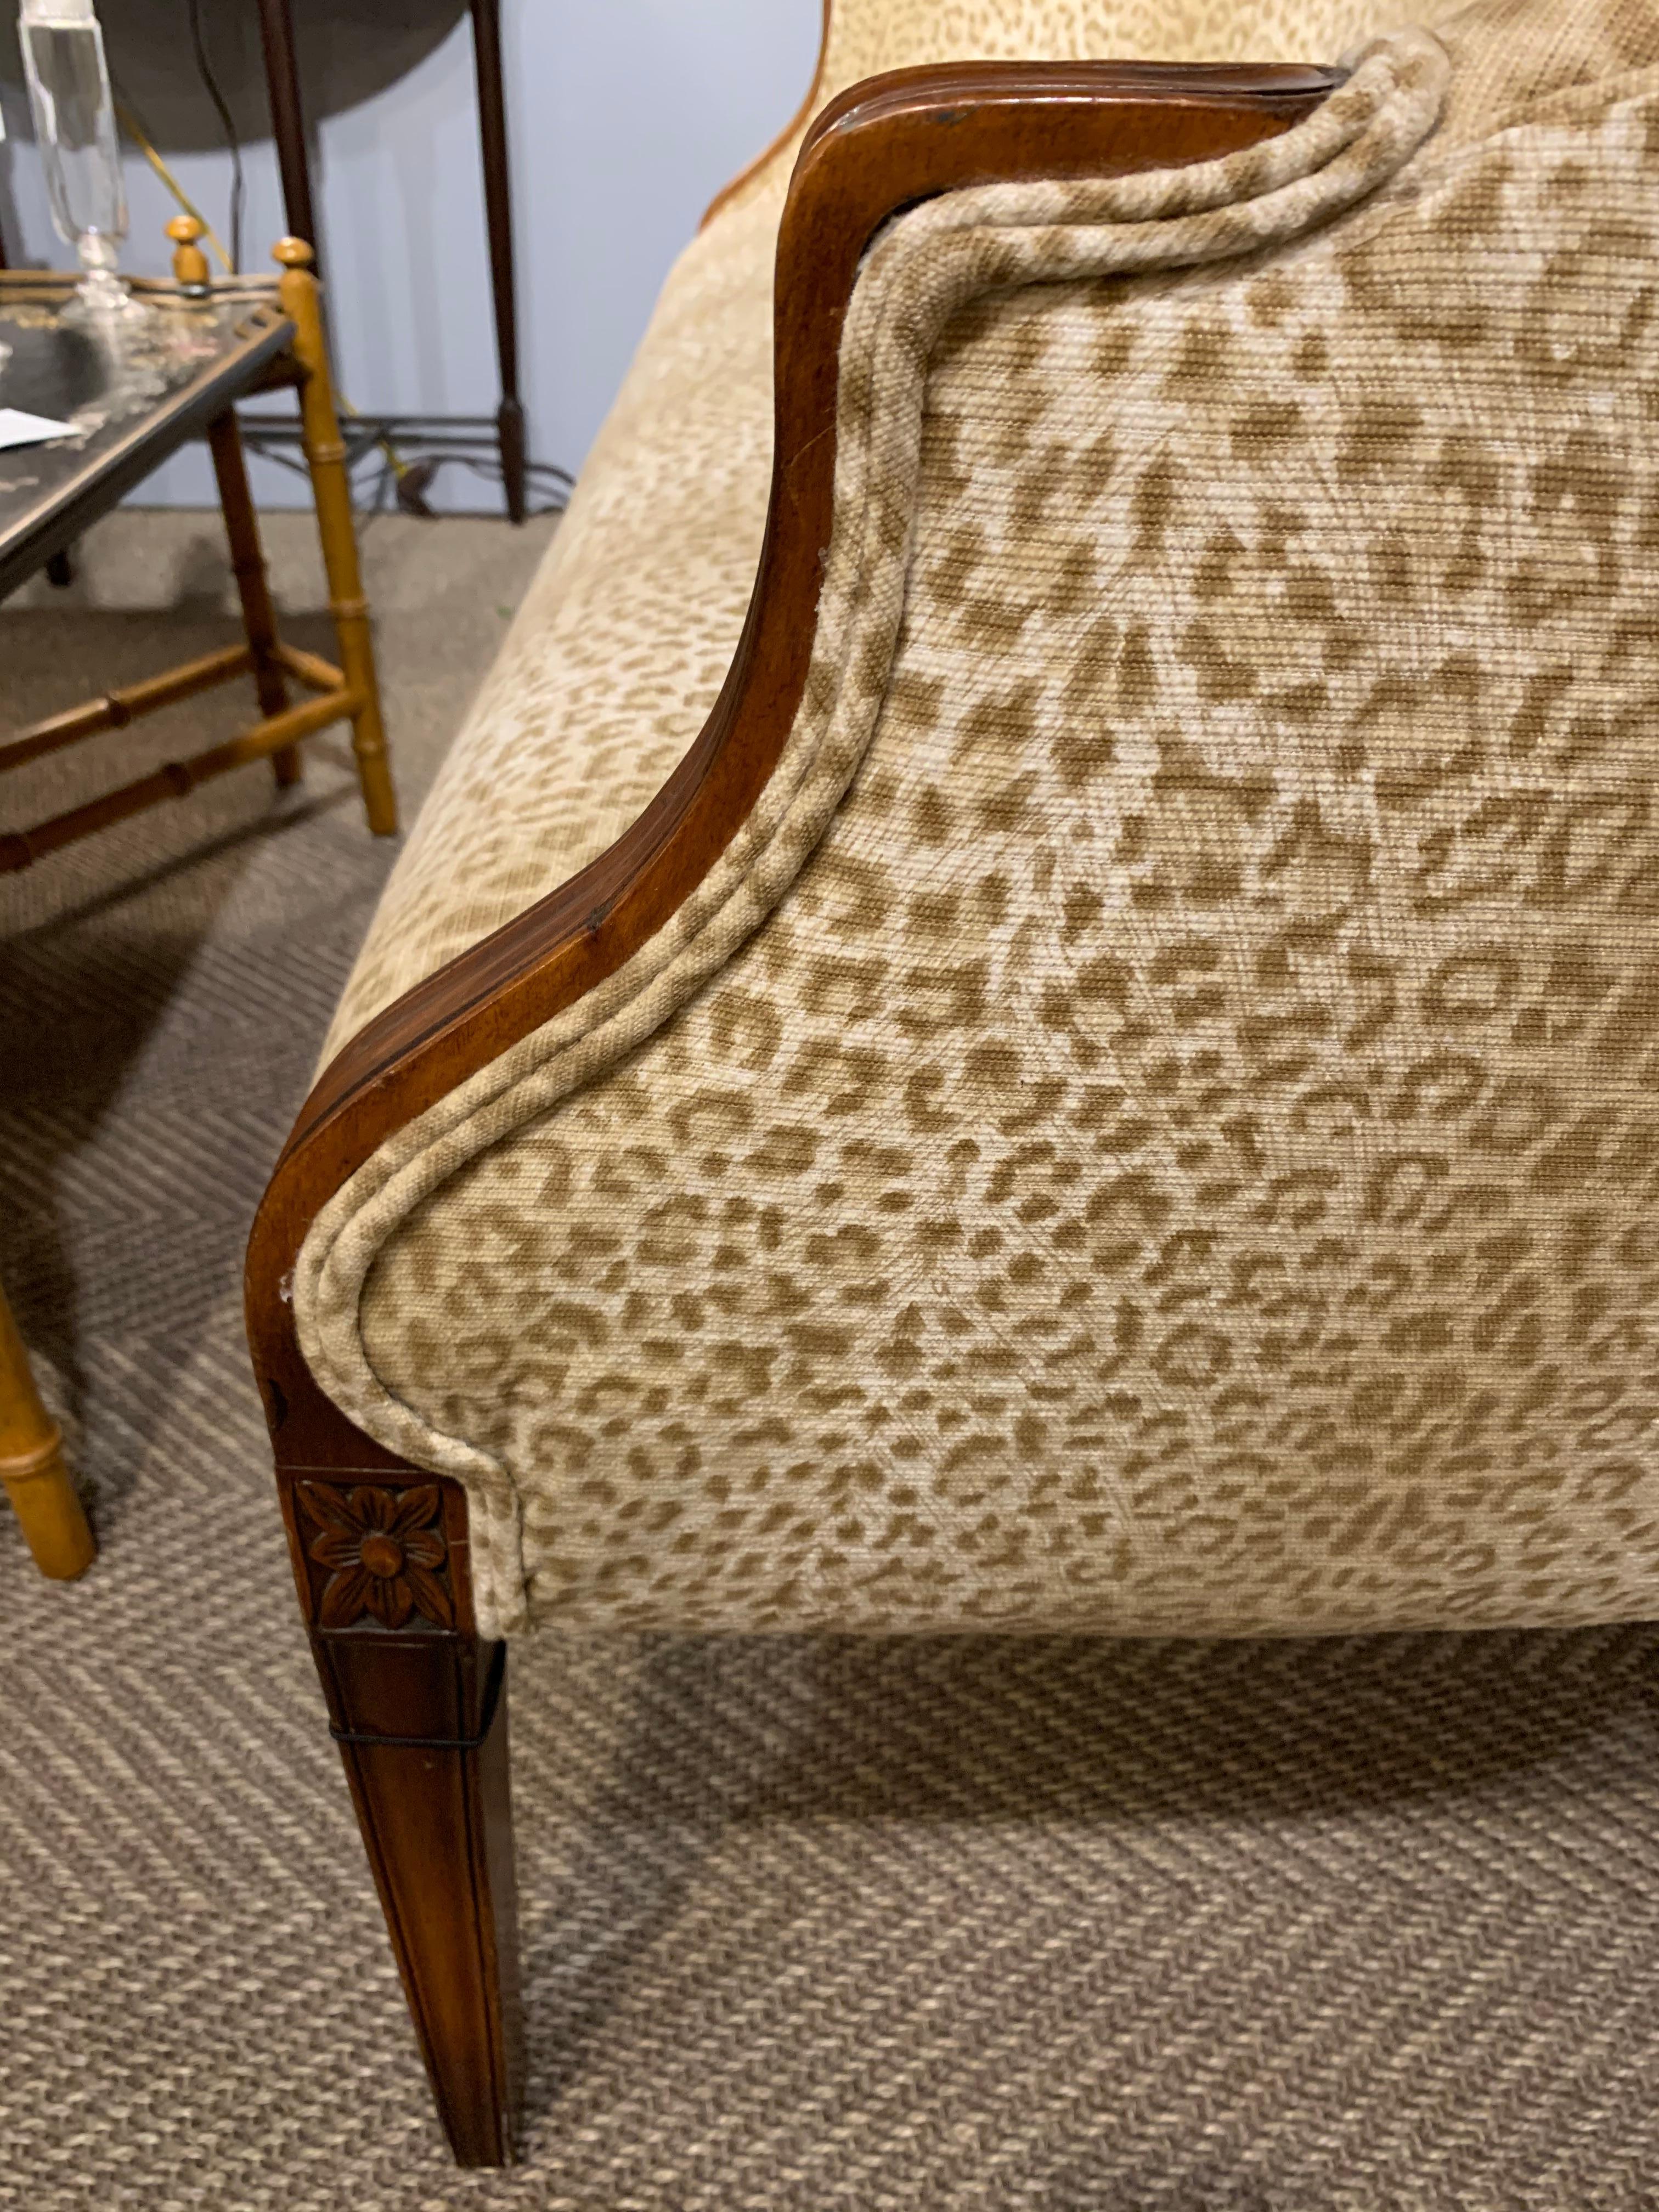 Sensational Mahogany and Animal Print Upholstered Sofa 2